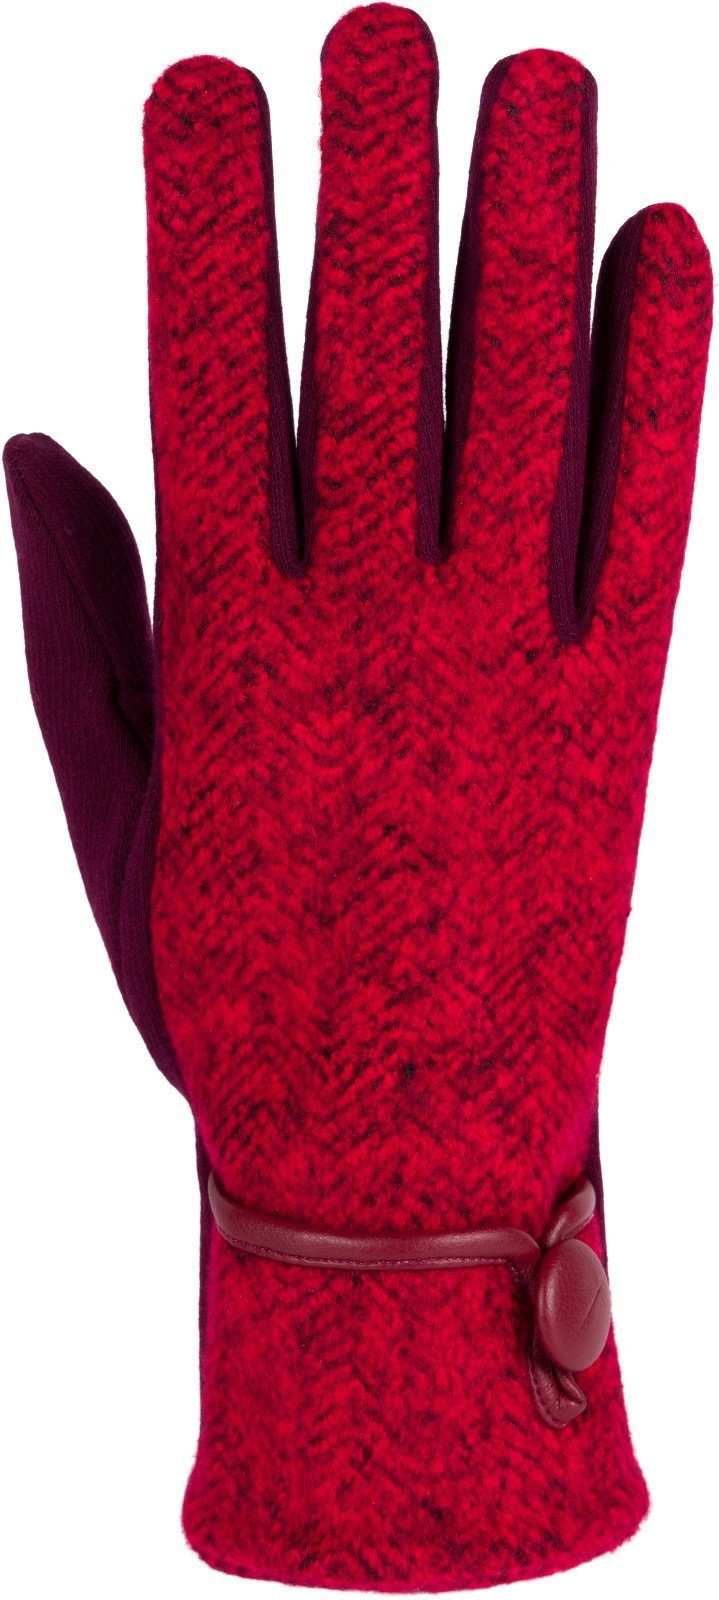 Fischgrät Touchscreen Bordeaux-Rot styleBREAKER Fleecehandschuhe Muster Handschuhe